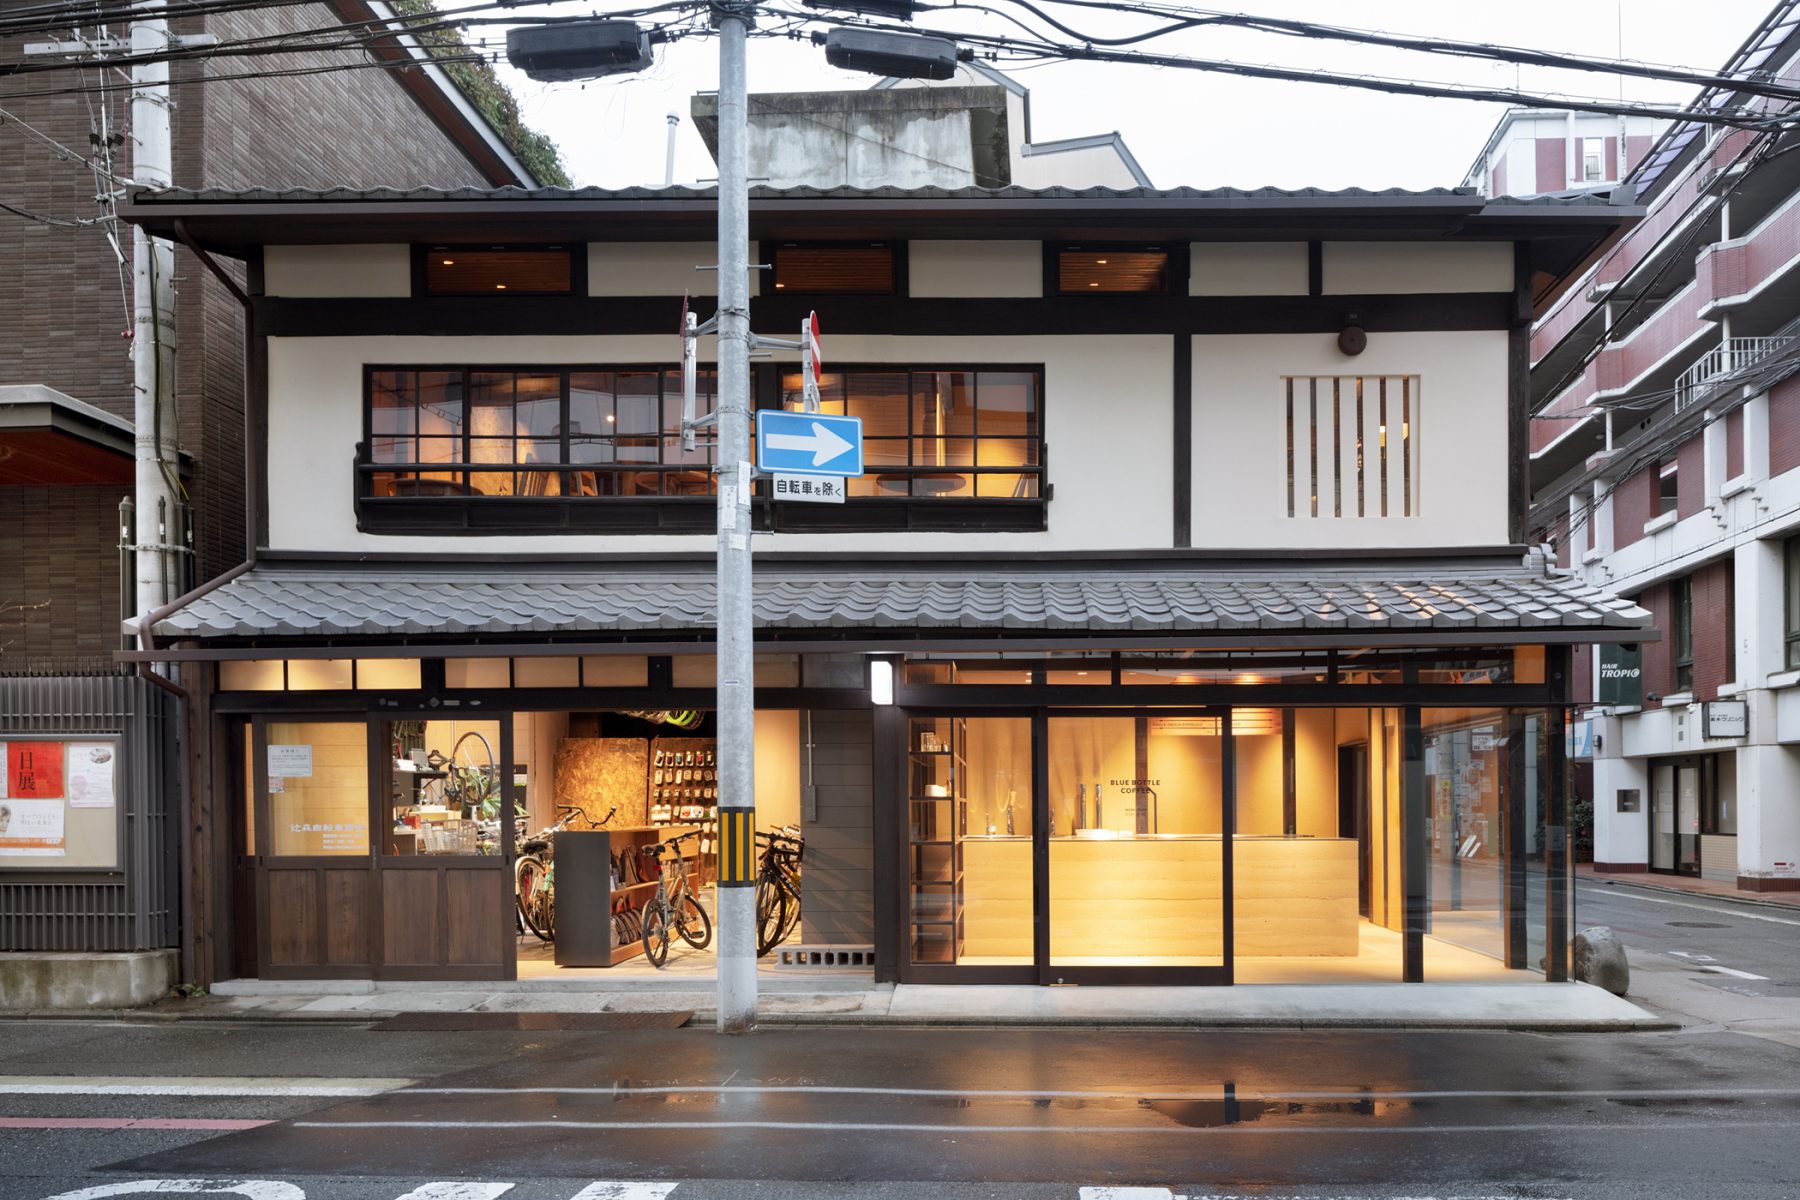 https://www.spoon-tamago.com/wp-content/uploads/2020/10/Blue-Bottle-Coffee-Kyoto-Rokkaku-Cafe-1-2.jpg